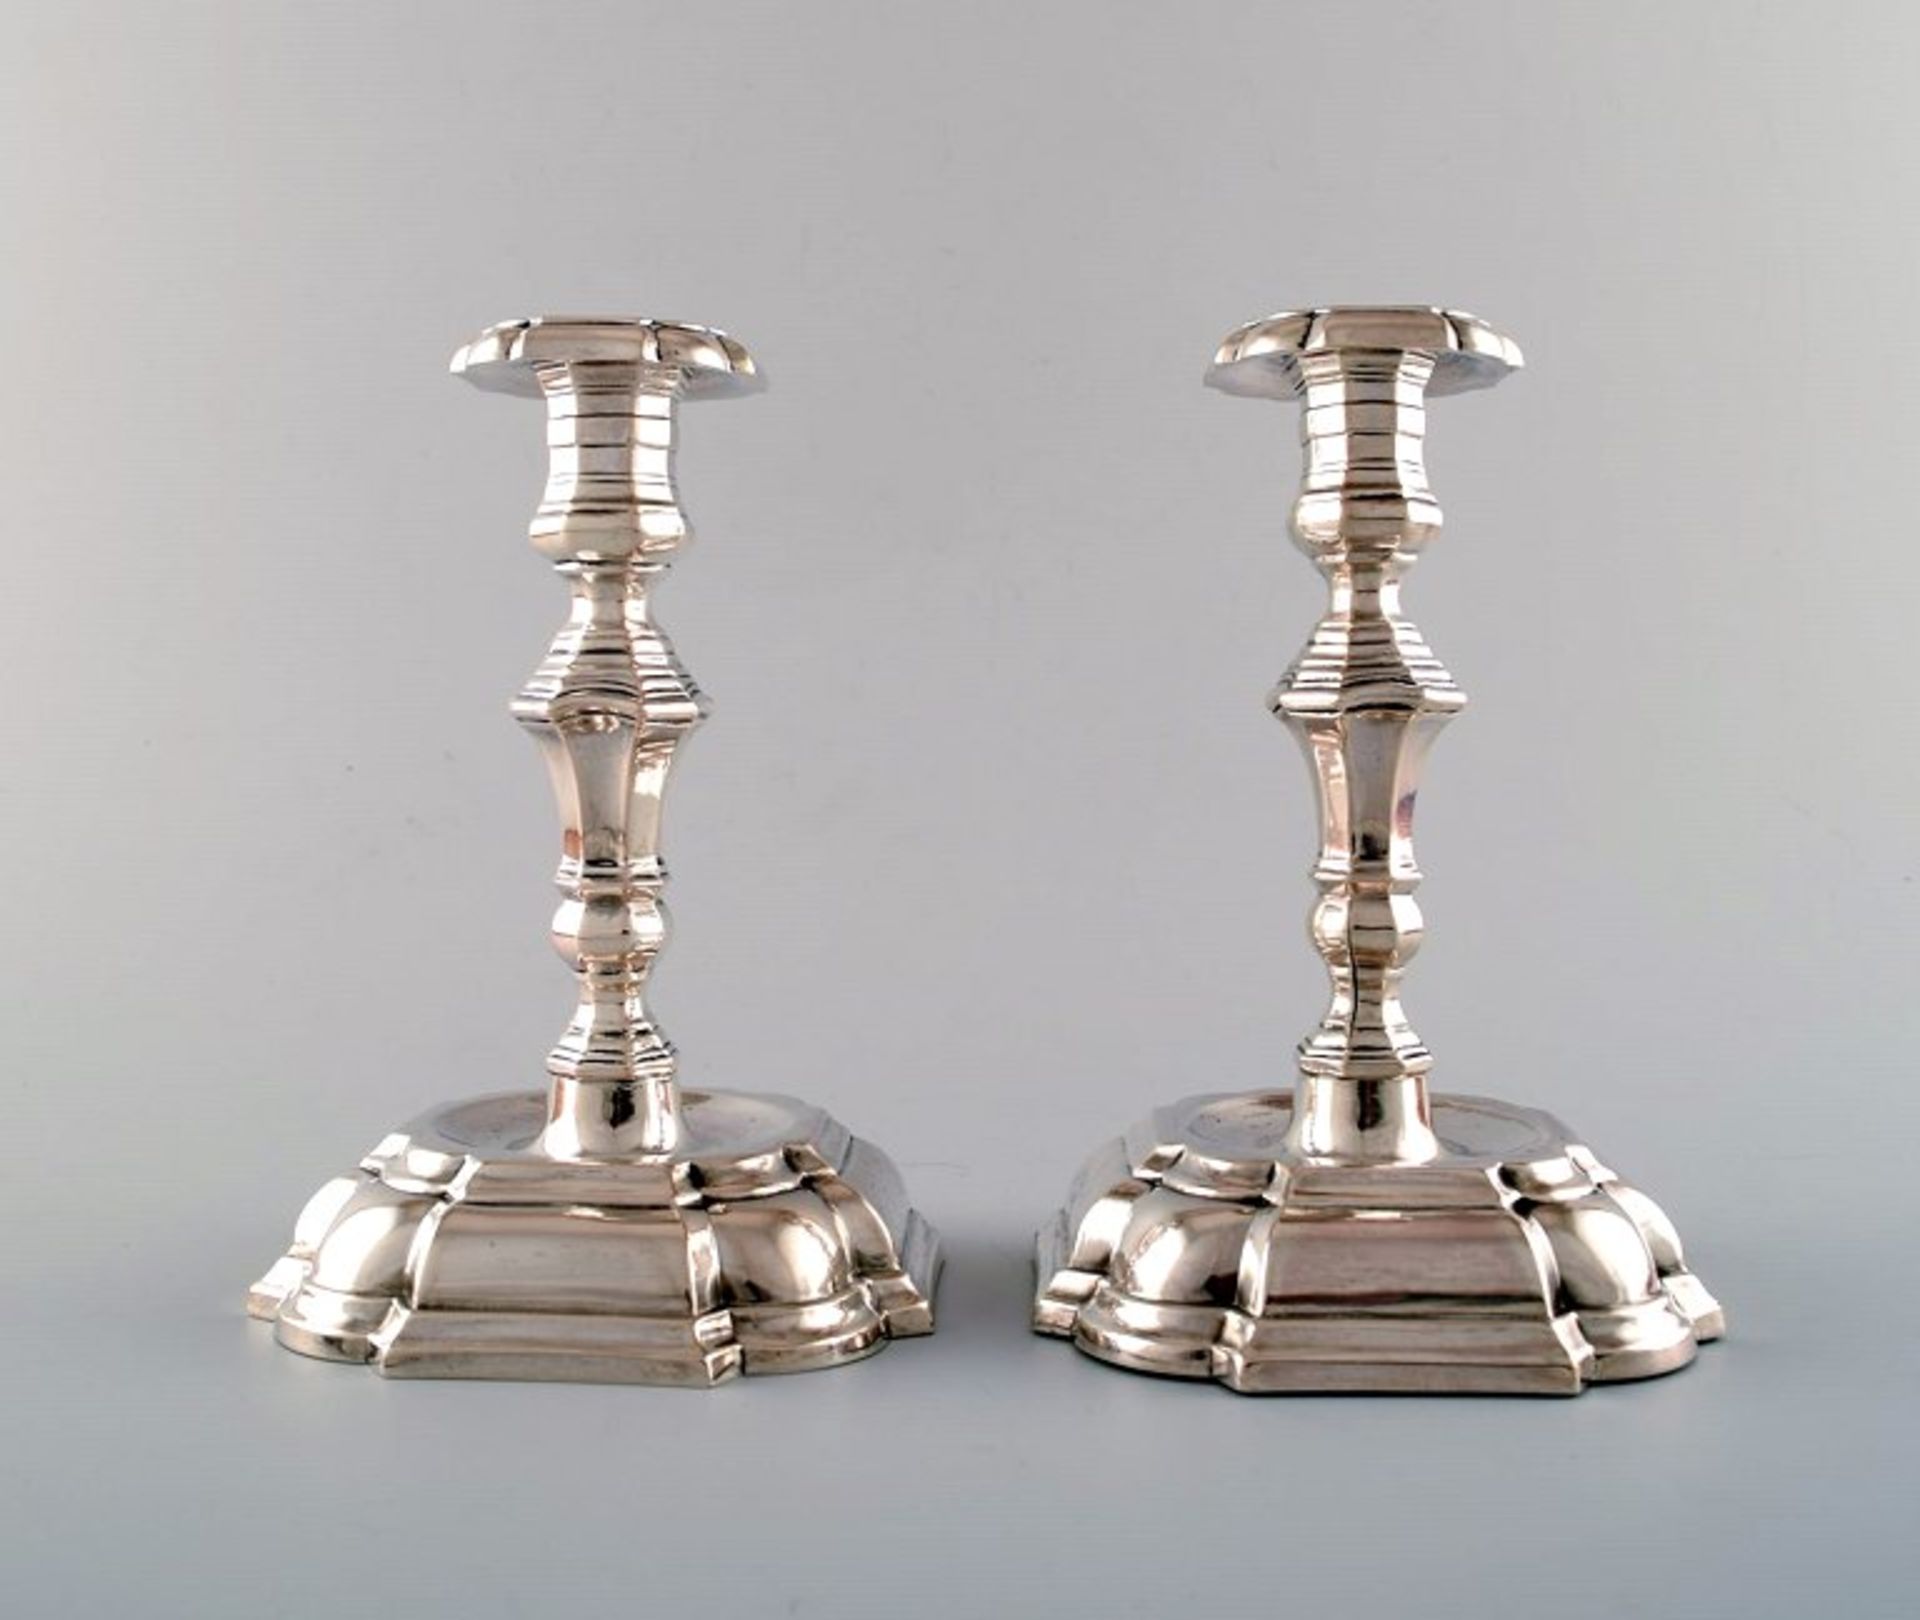 Jens Sigsgaard, ein Paar Kerzenleuchter im Rokokostil, Silber mit drei Türmen. 1 kg (gefüllt). H. je